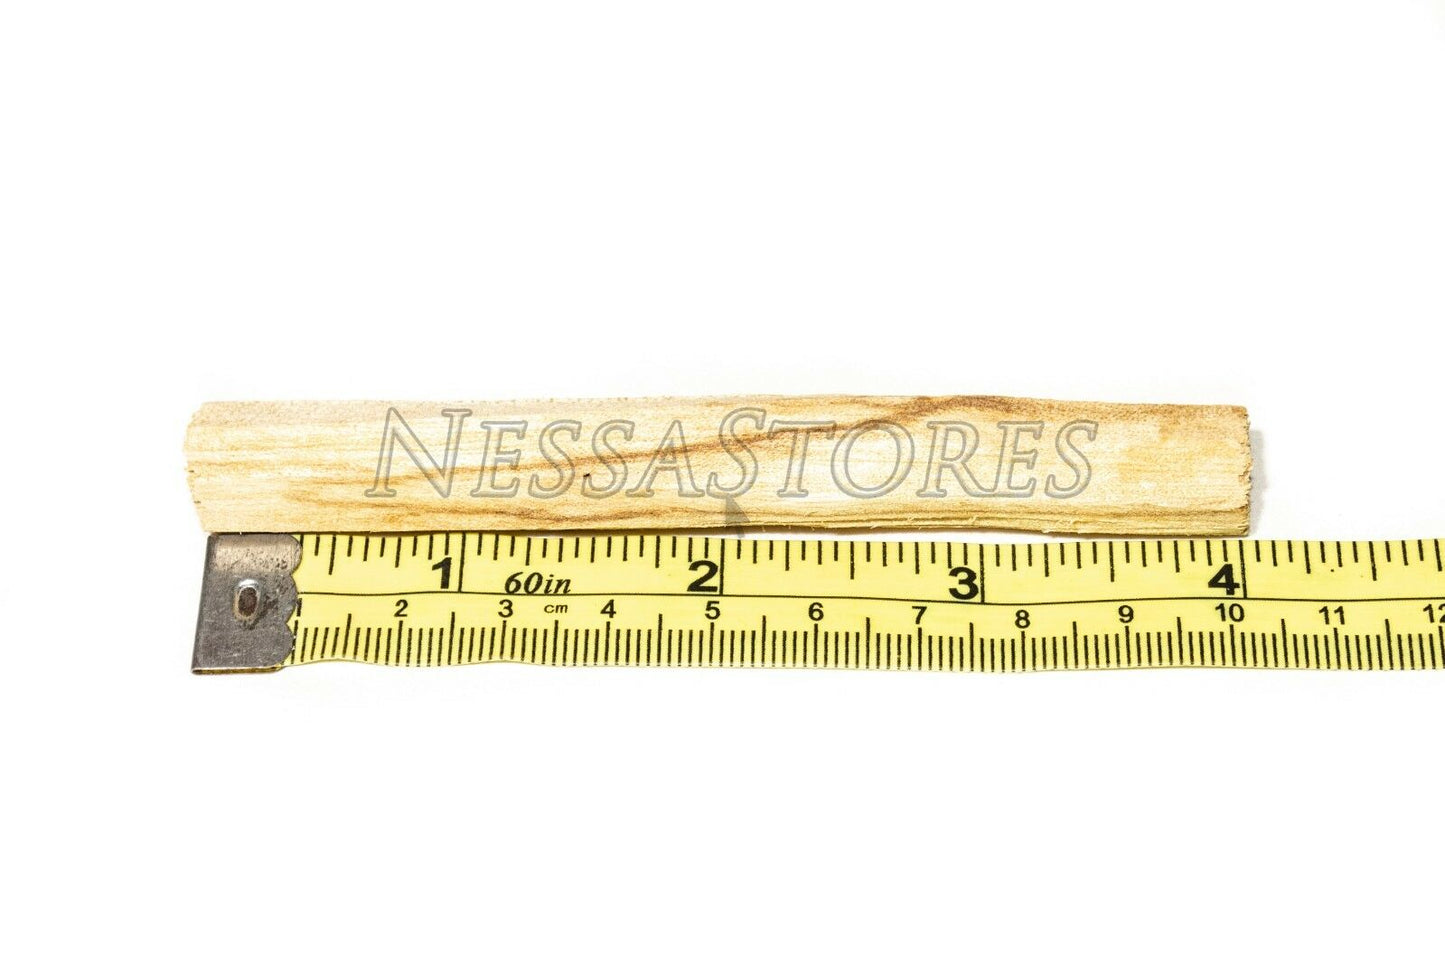 NessaStores Palo Santo Holy Wood Incense Sticks Ecuadorian (20 pcs) #JC-064